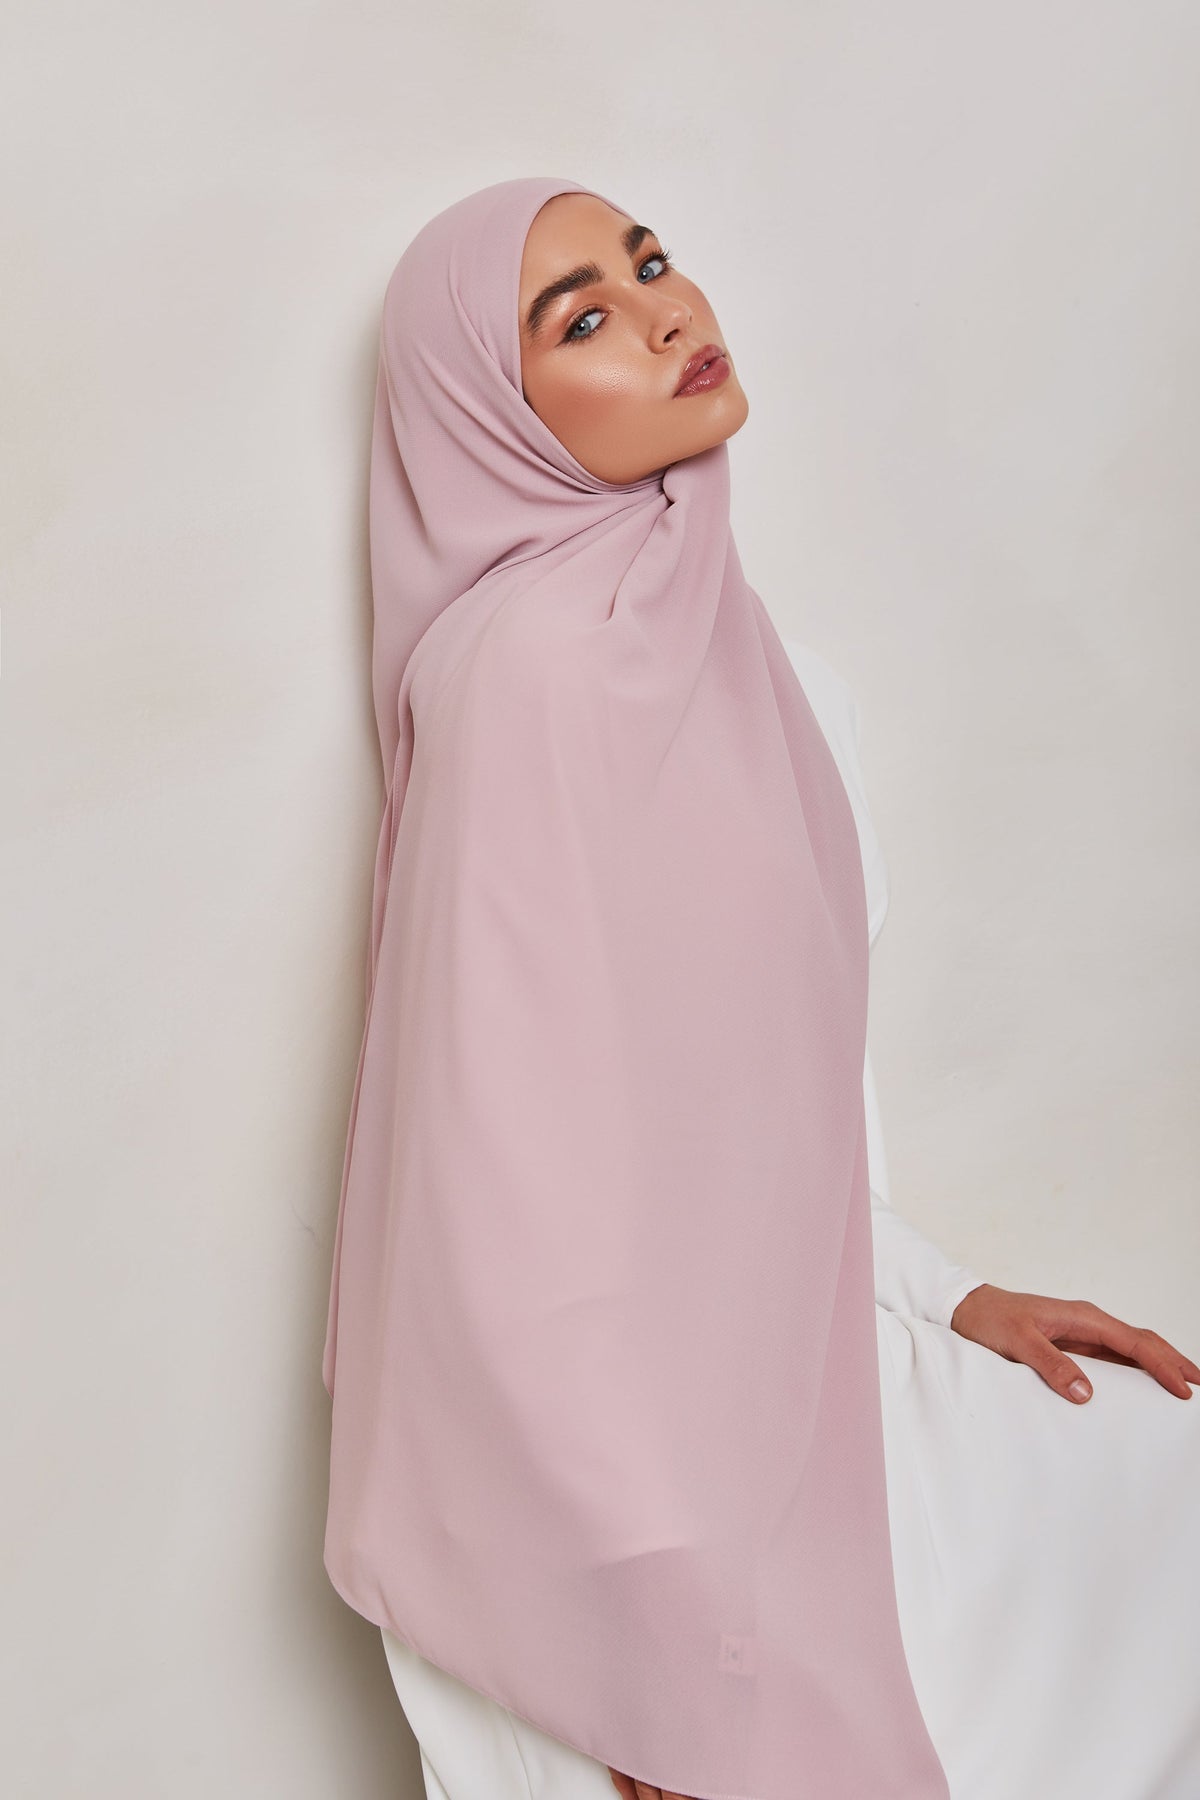 TEXTURE Twill Chiffon Hijab - Twinkling epschoolboard 